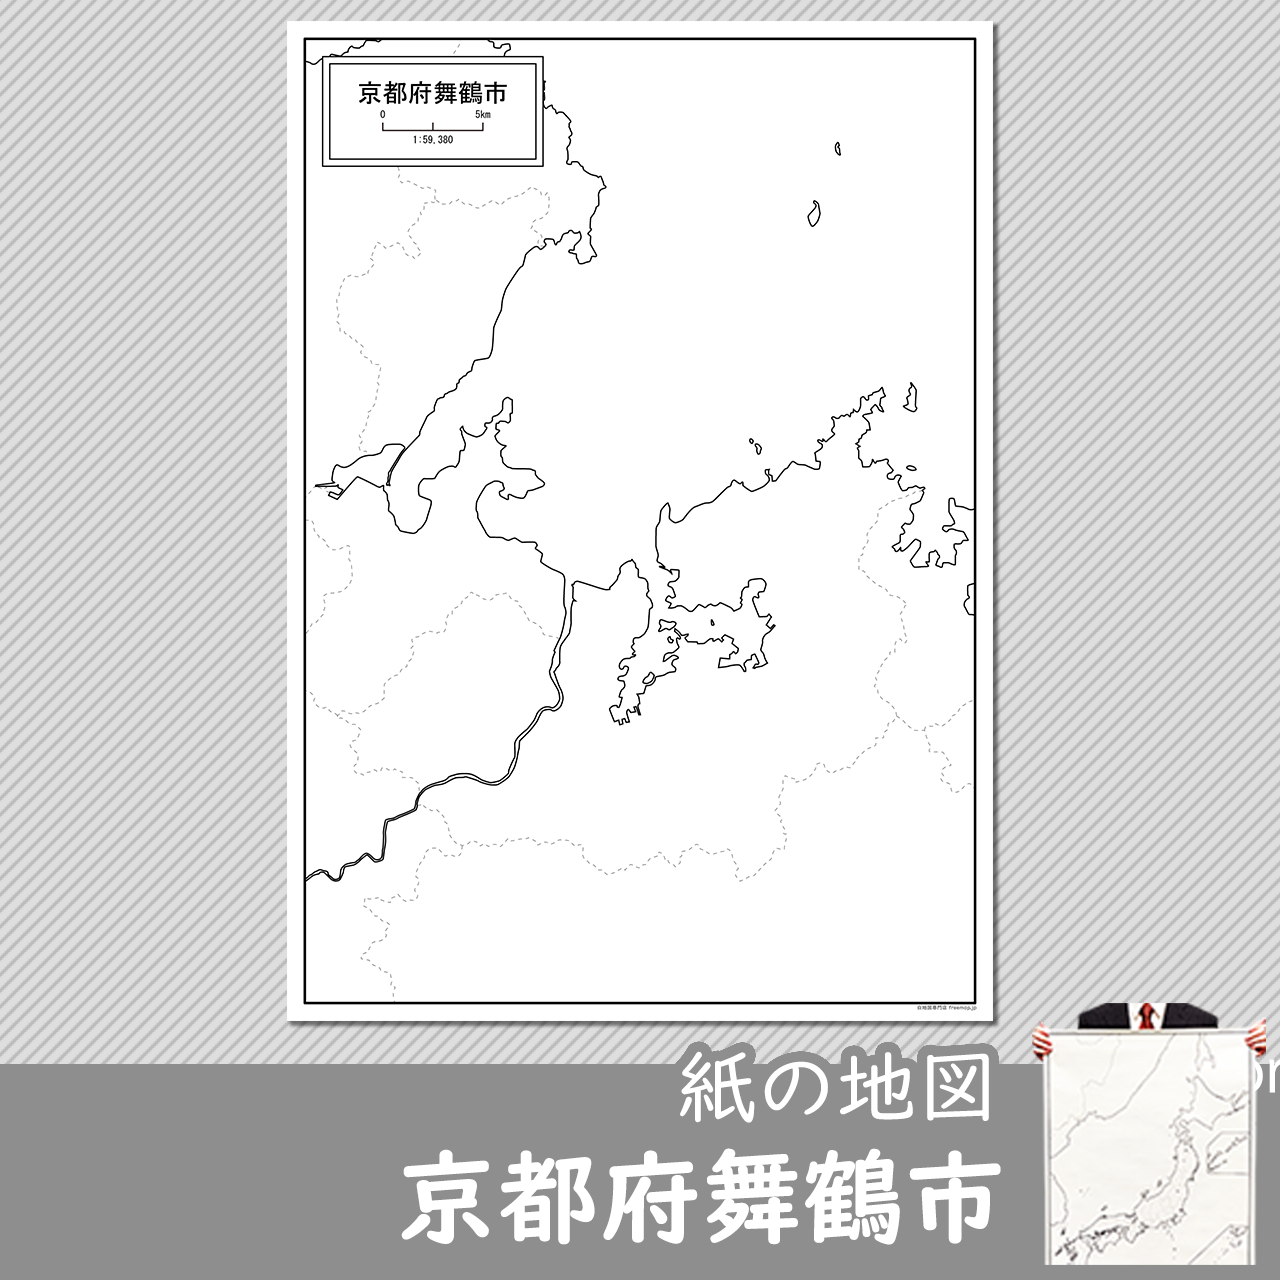 舞鶴市の紙の白地図のサムネイル